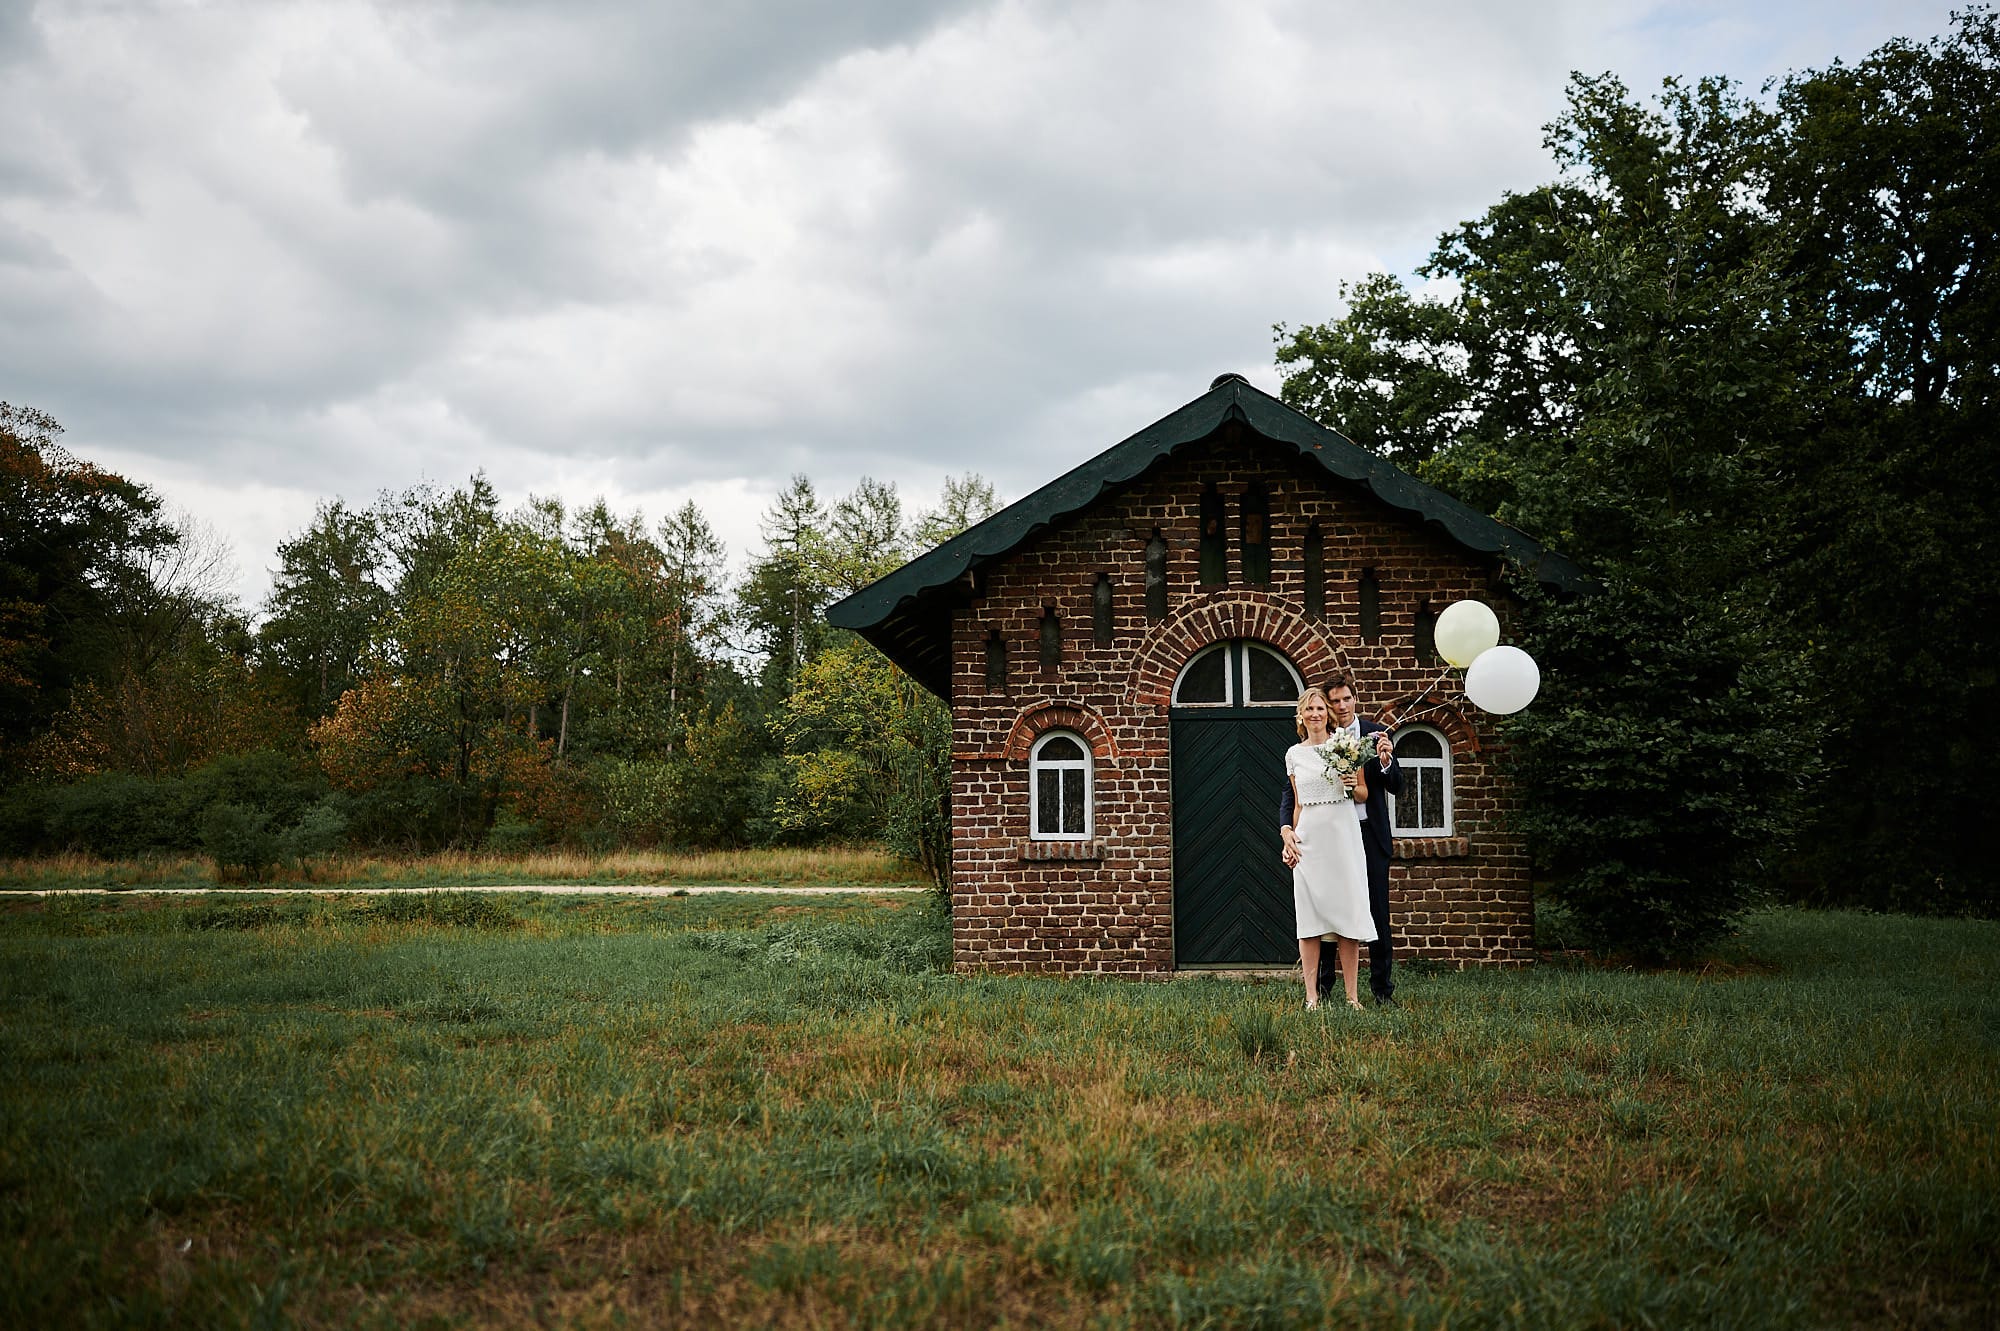 Eine Person steht neben einem kleinen Backsteingebäude mit Luftballons in ländlicher Umgebung und bietet eine idyllische Startseite.